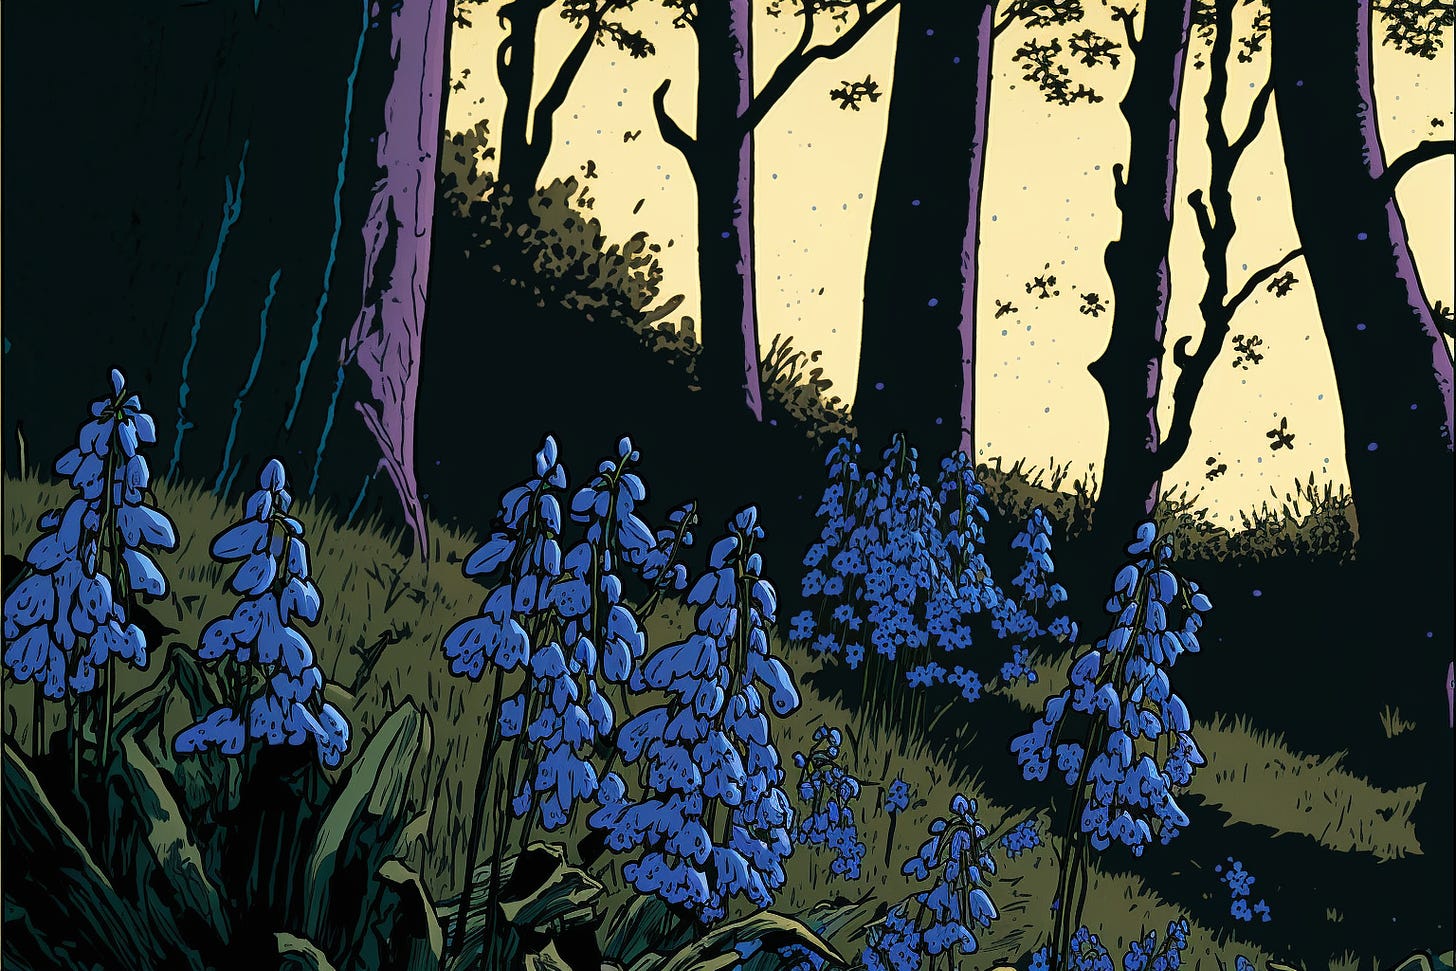 bluebell flowers, graphic novel